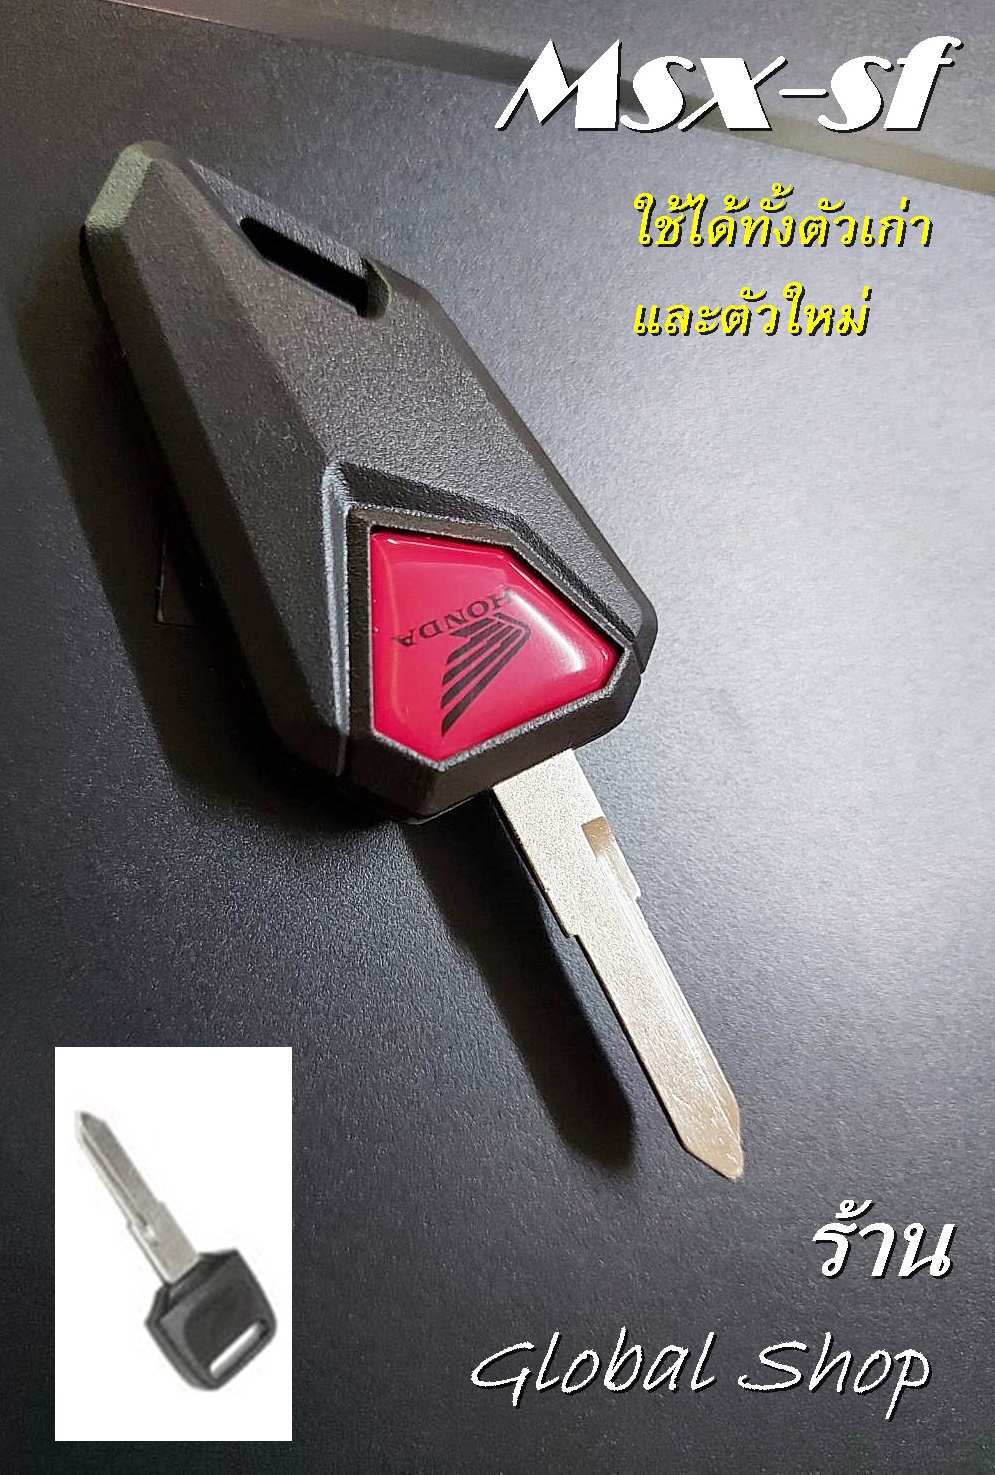 กญแจพับ Honda Msx สามารถใฃ้กับ MSX ตัวเก่าและใหม่ได้)